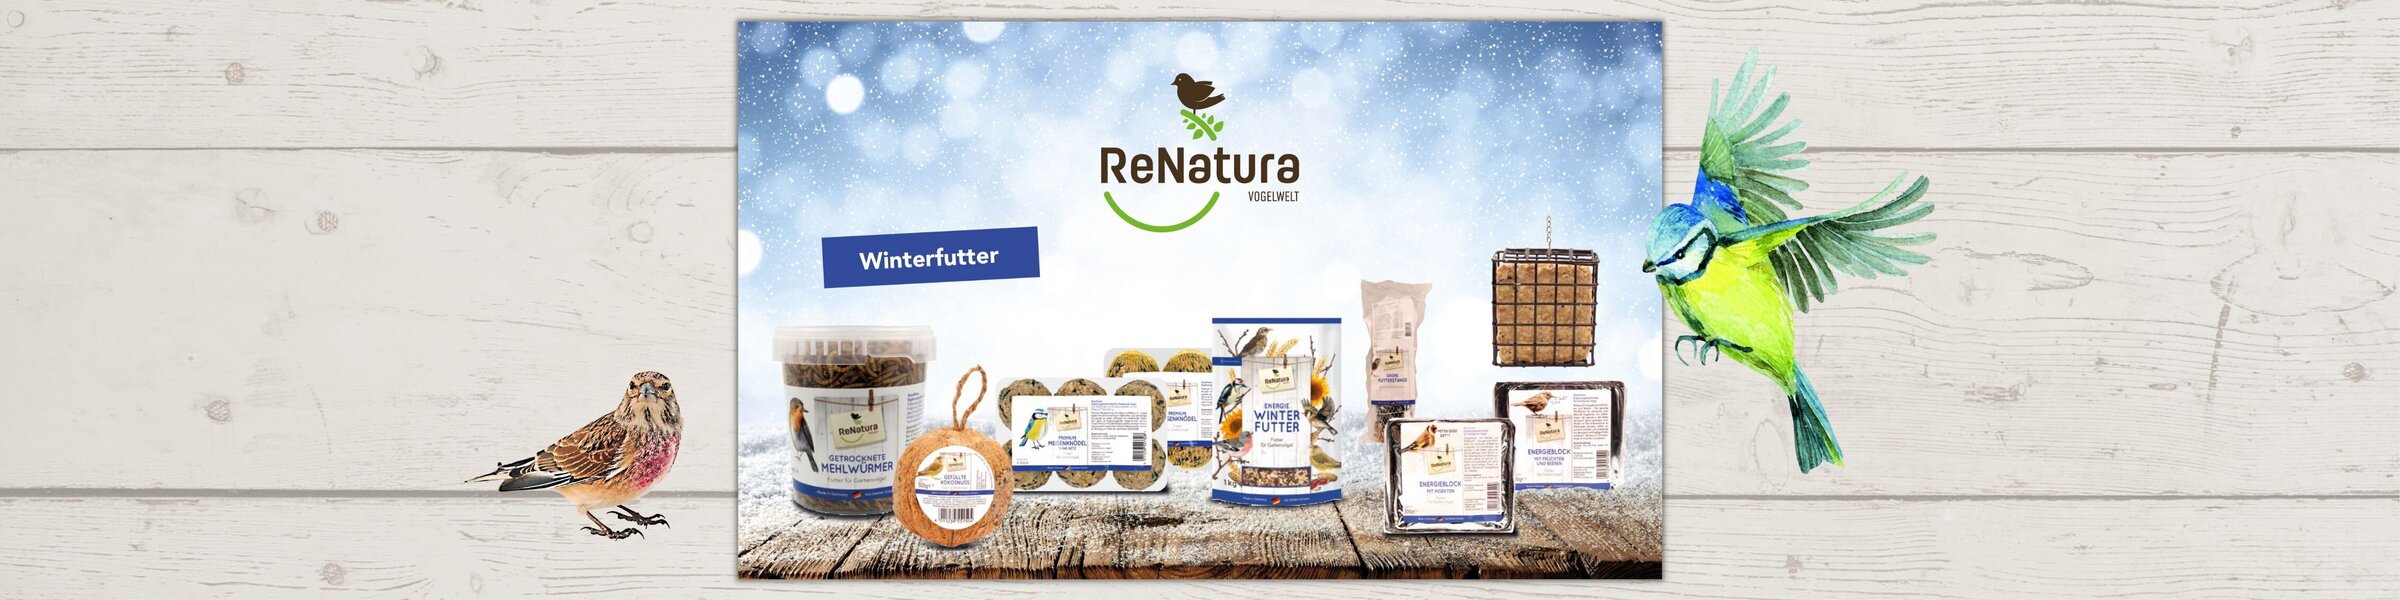 Gruppenbild aller Produkte von ReNatura Winterfutter für Wildvögel.